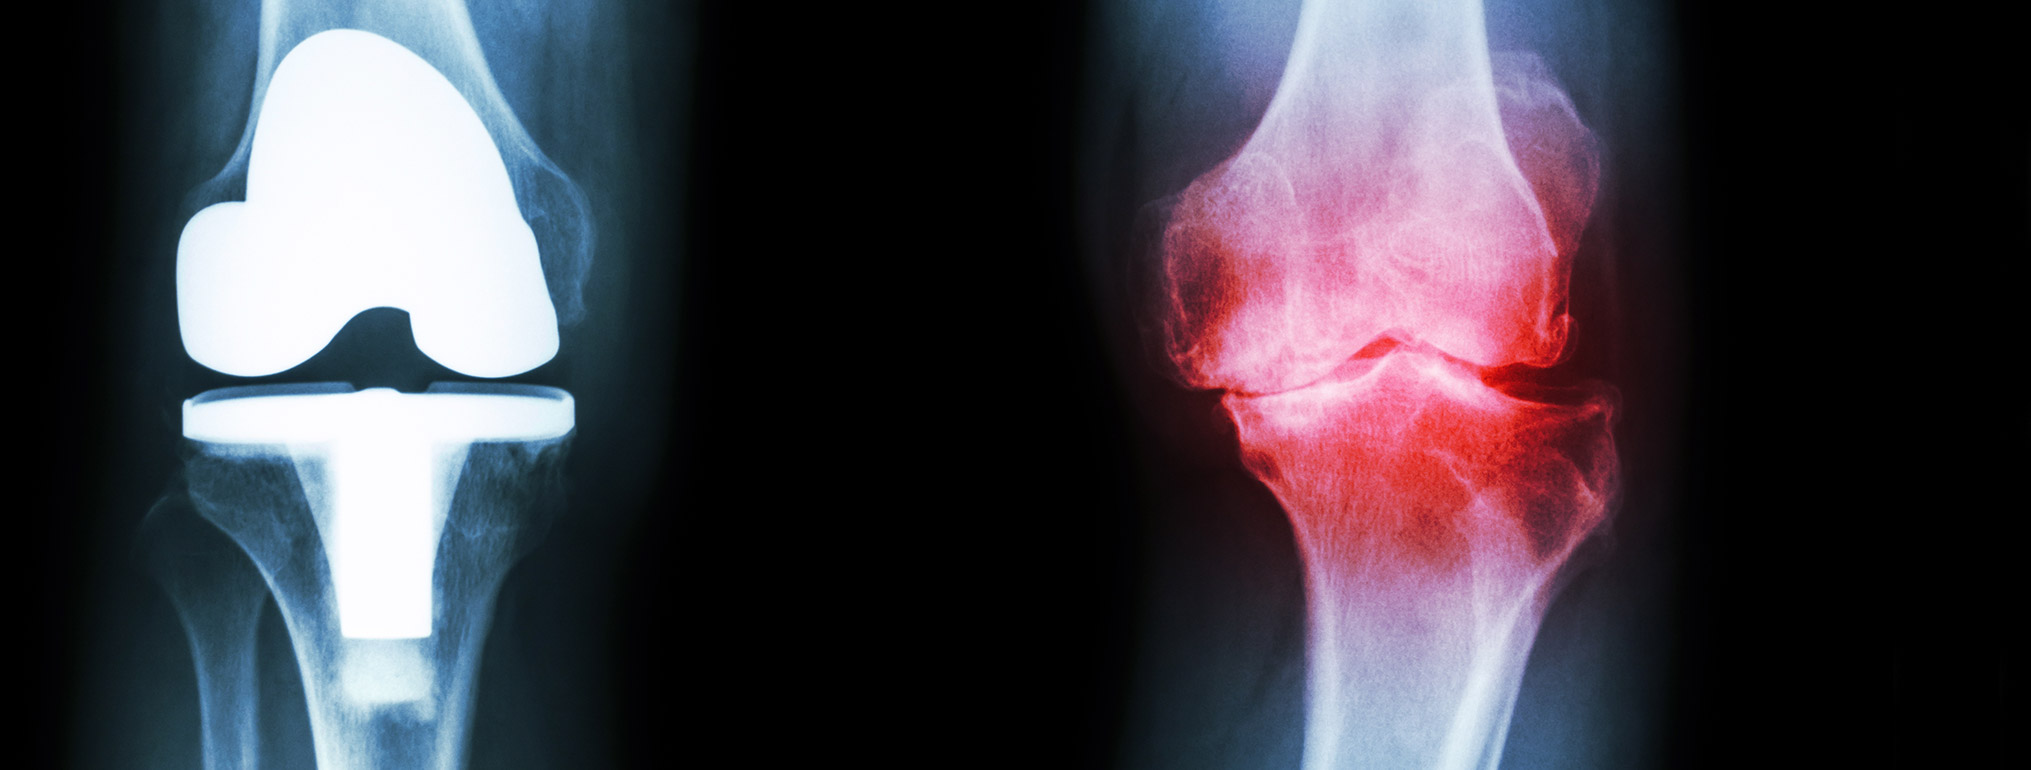 scan of arthritic knees